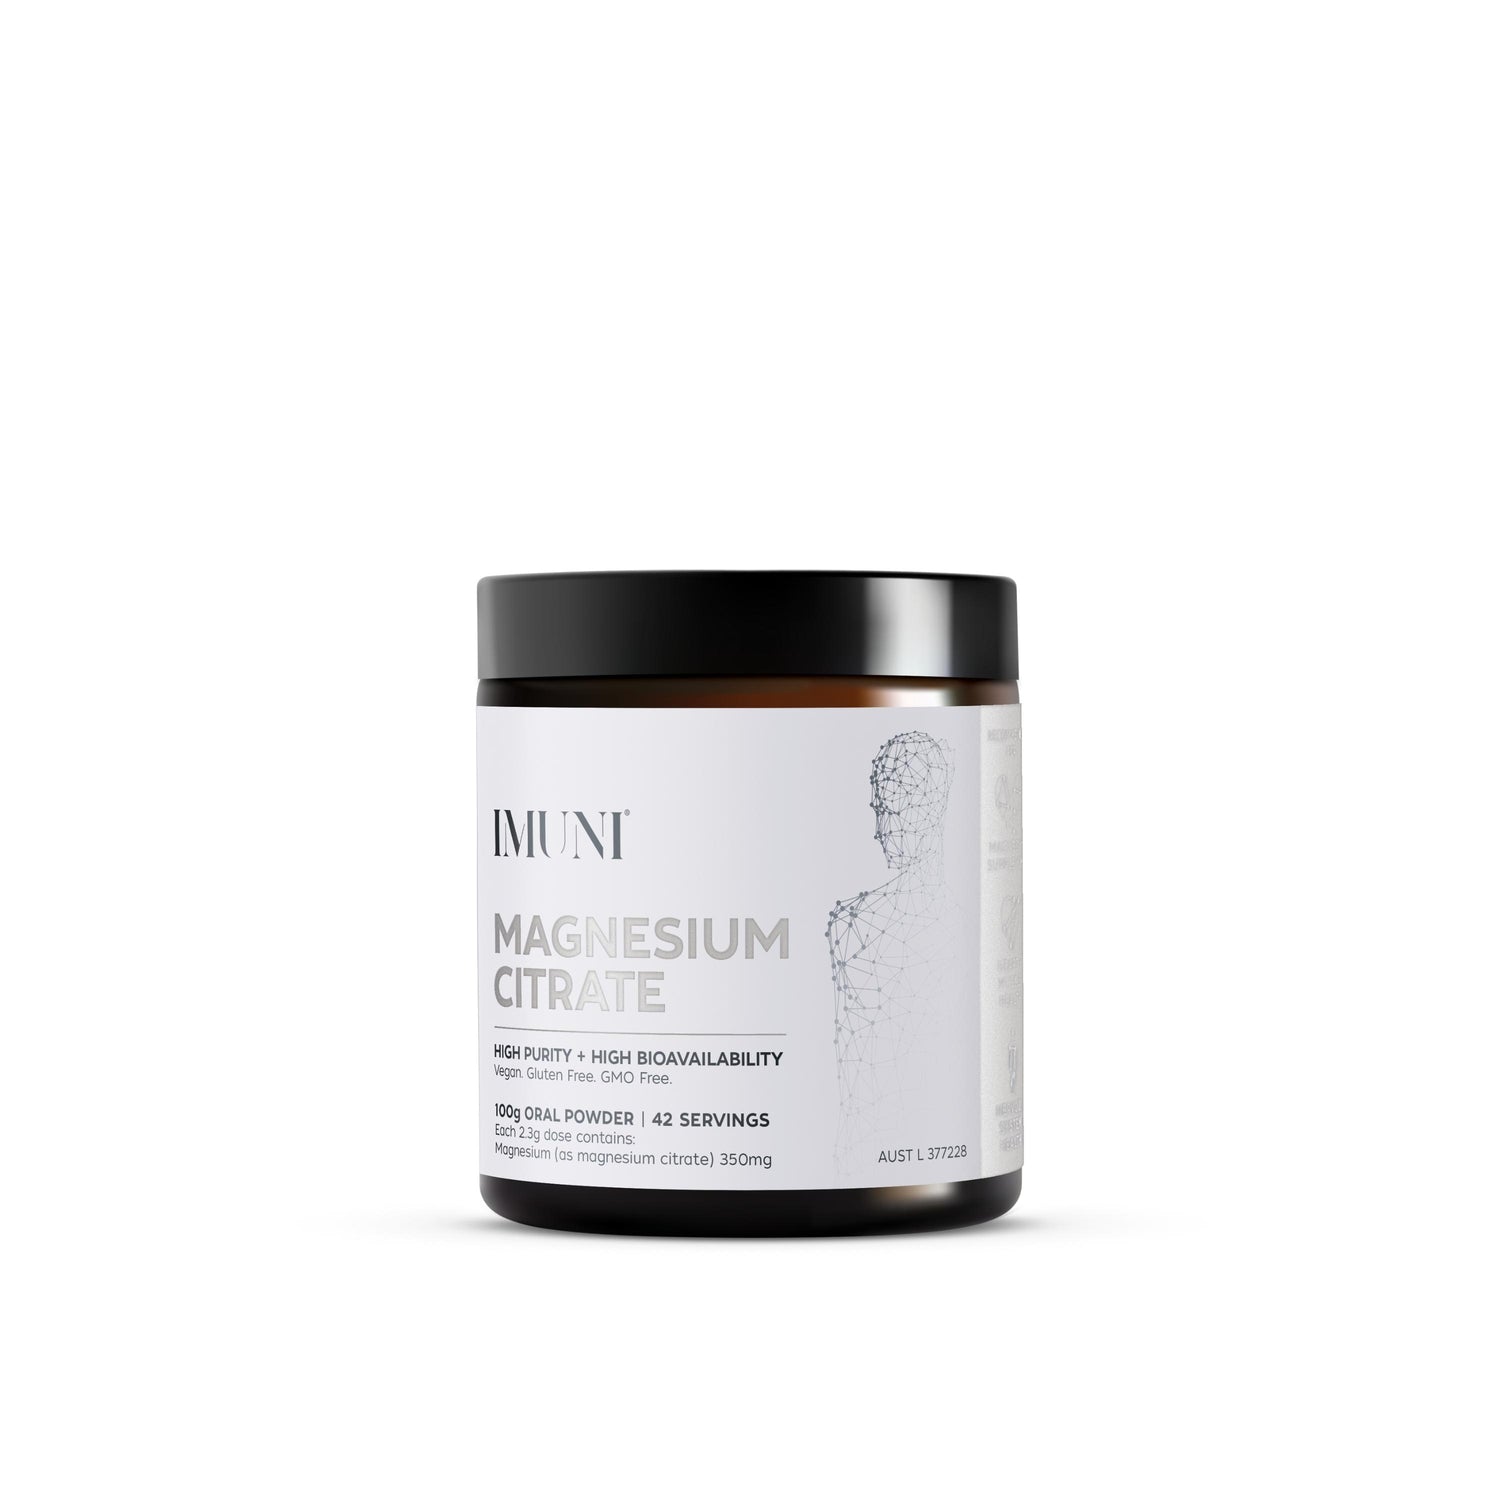 IMUNI Magnesium Citrate - 100g